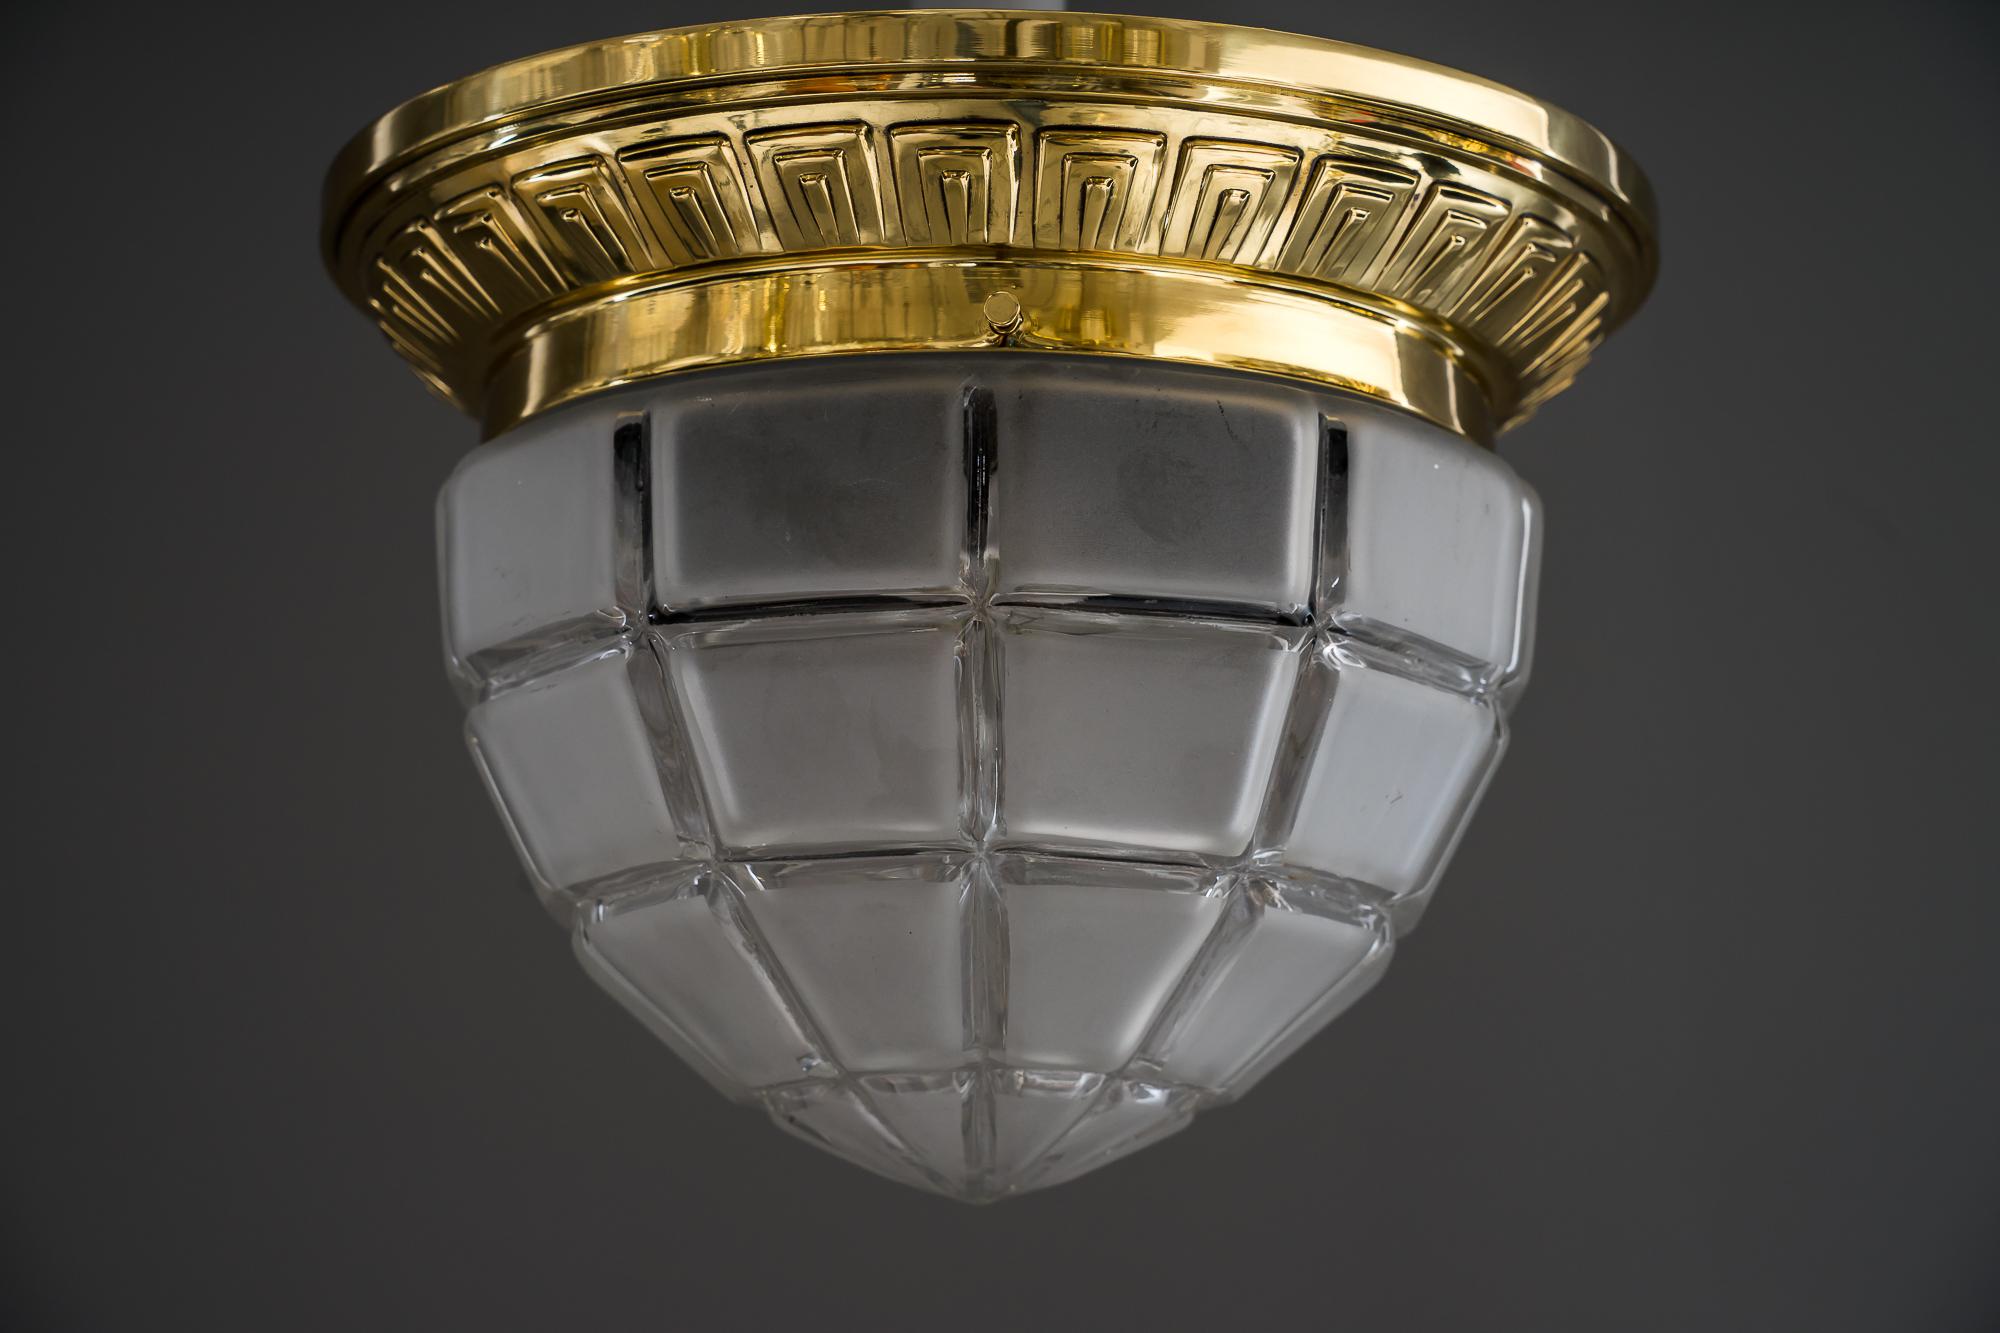 Art Deco Deckenlampe Wien um 1920er Jahre
Messing poliert und einbrennlackiert
Mattes Glas mit klaren Kanten
1 Glühbirne.